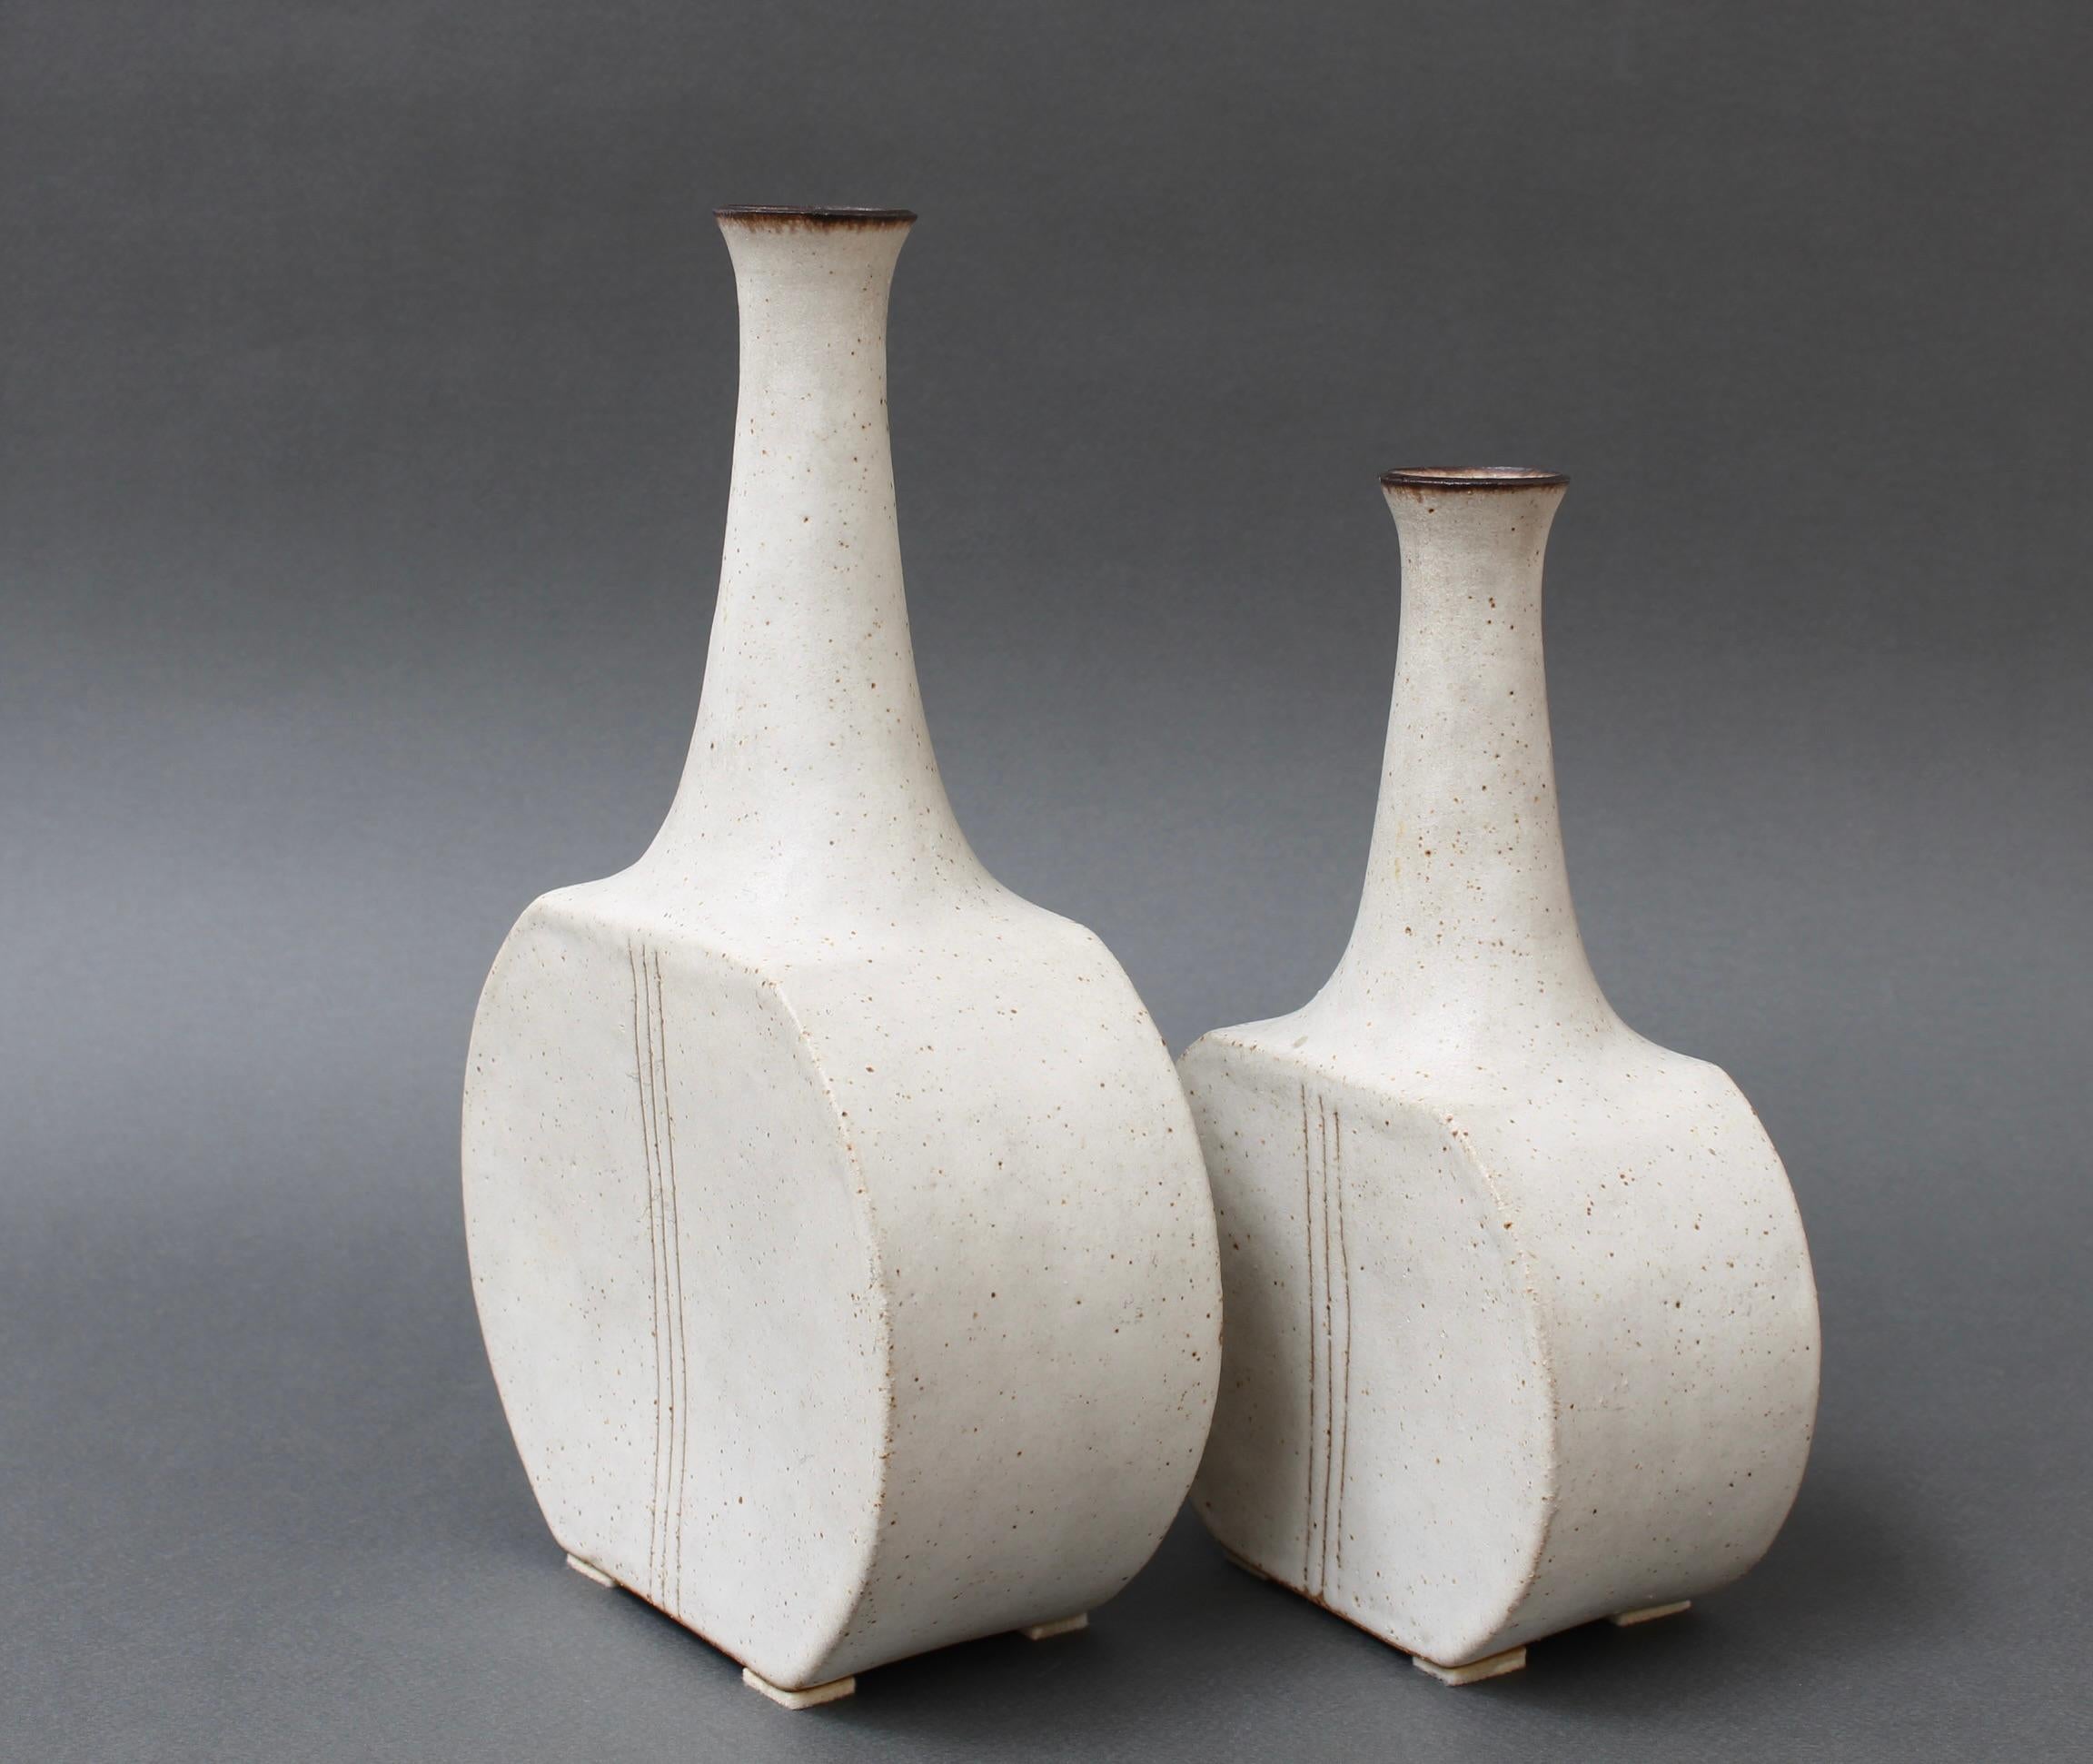 Minimalist Pair of Italian Ceramic Bottles by Bruno Gambone (circa 1980s)